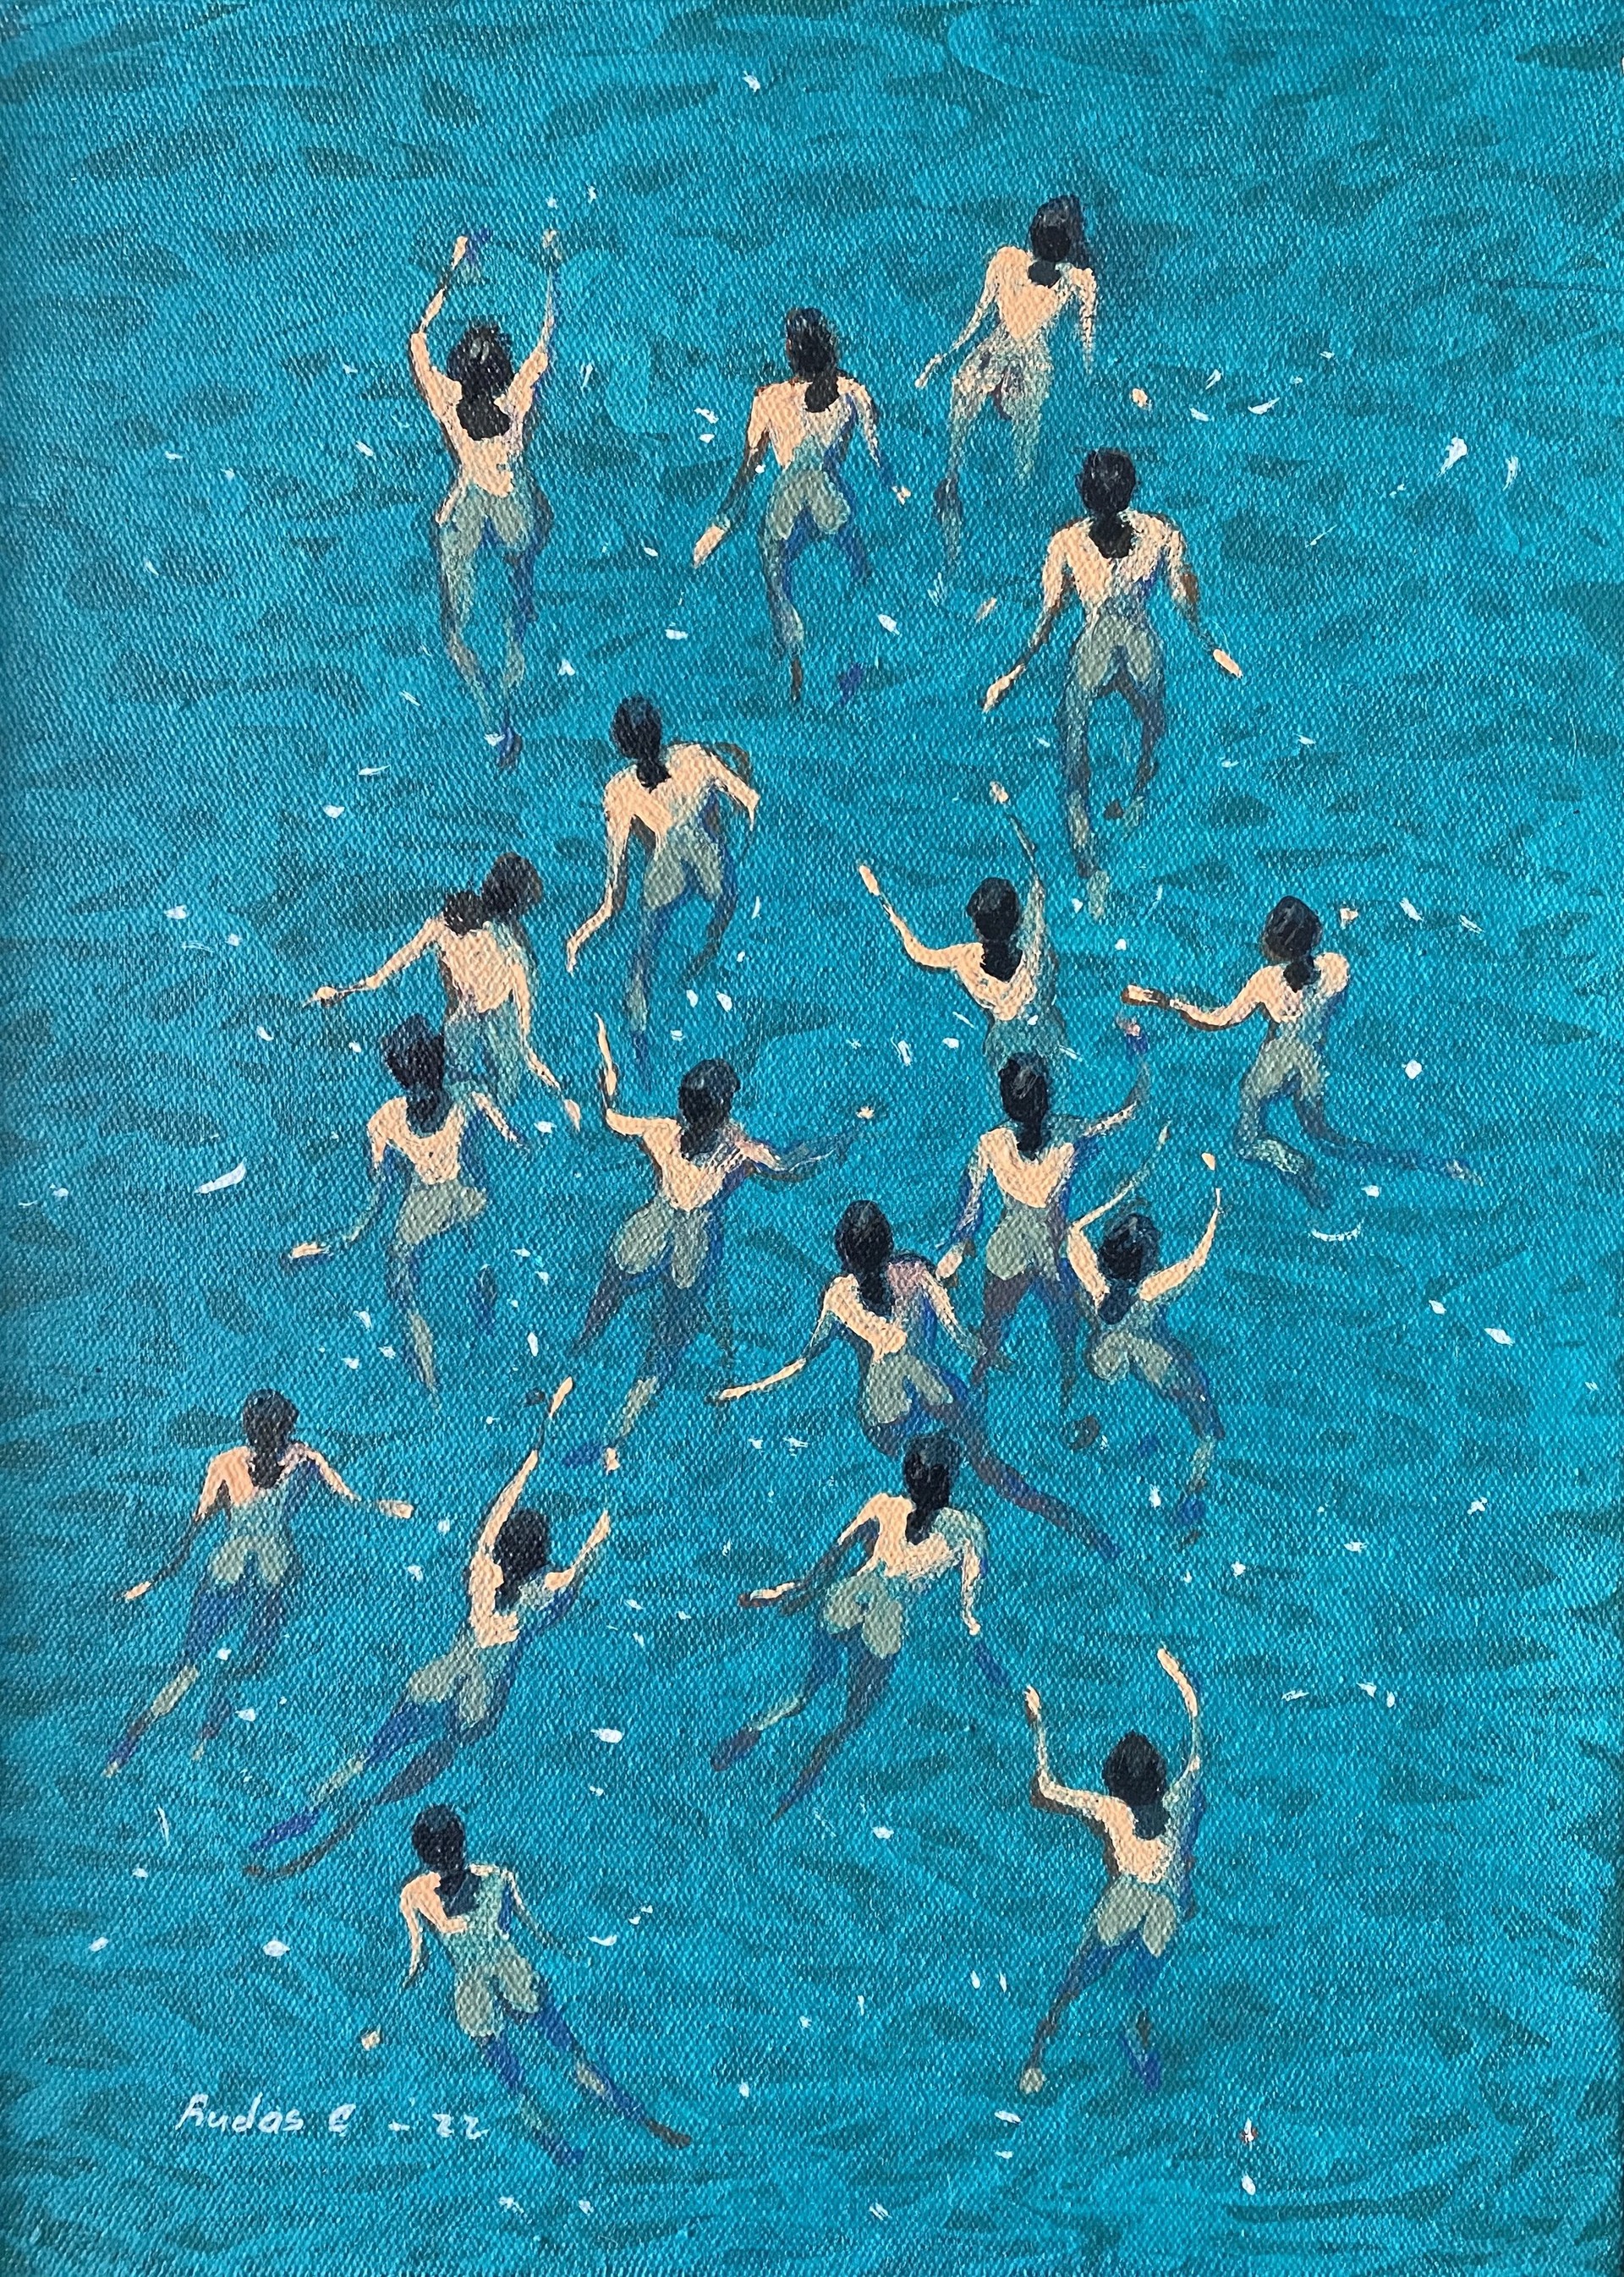 Nadadoras by Pascual Rudas